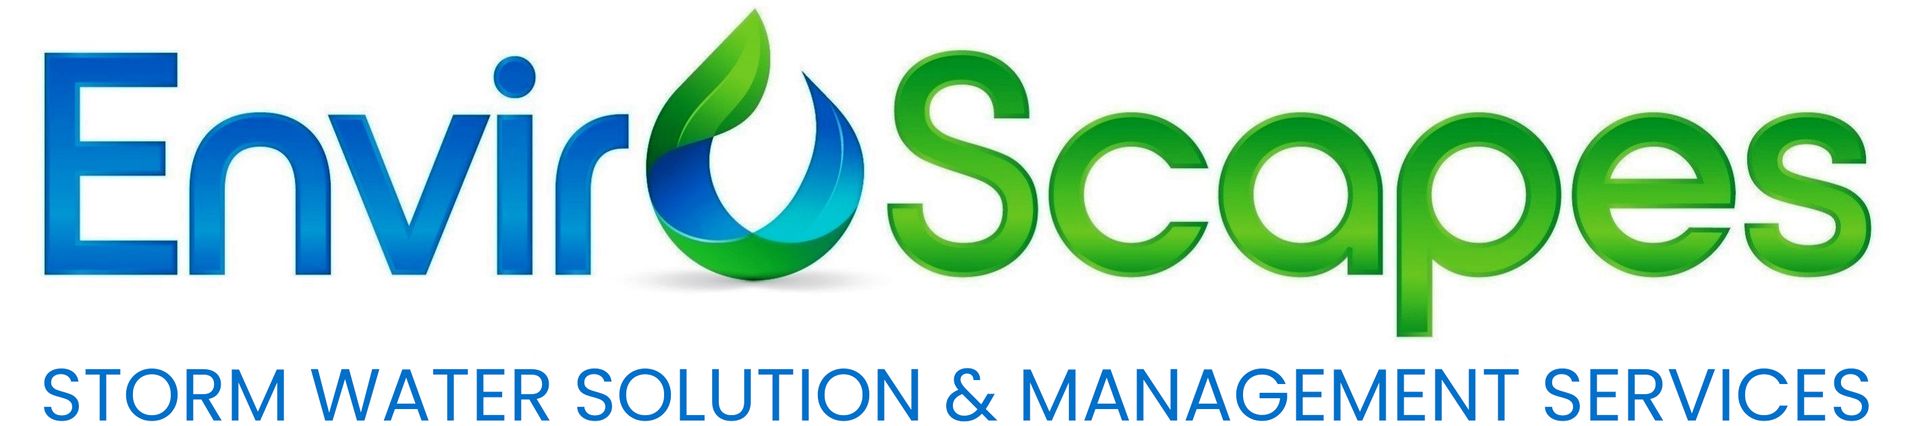 Enviroscapes Solutions, LLC